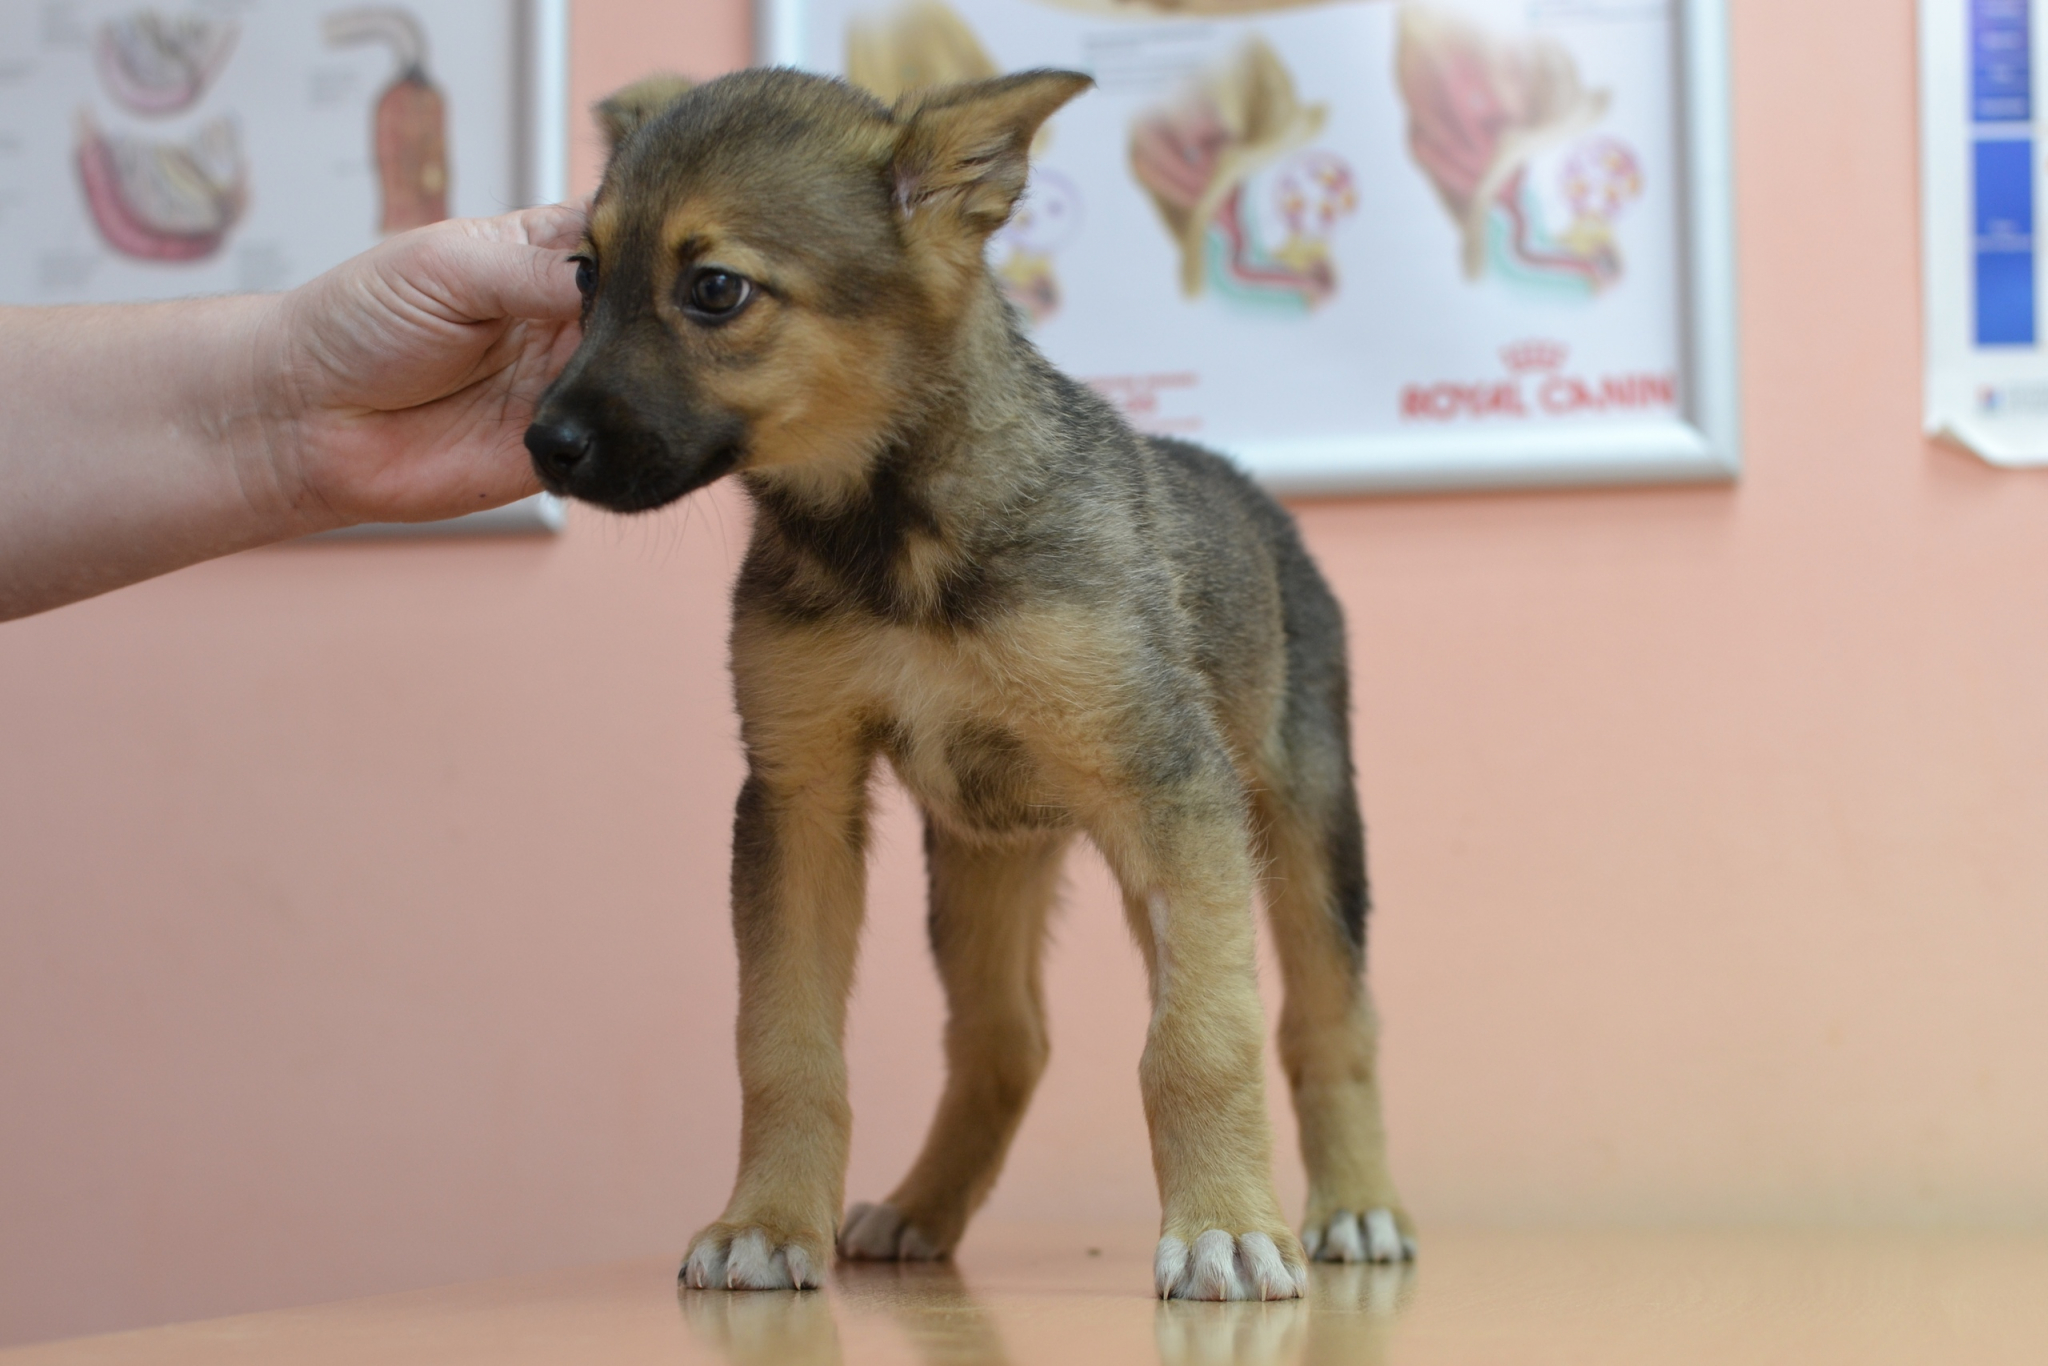 В Йошкар-Оле хозяева оставили "малышек" на растерзание стае собак